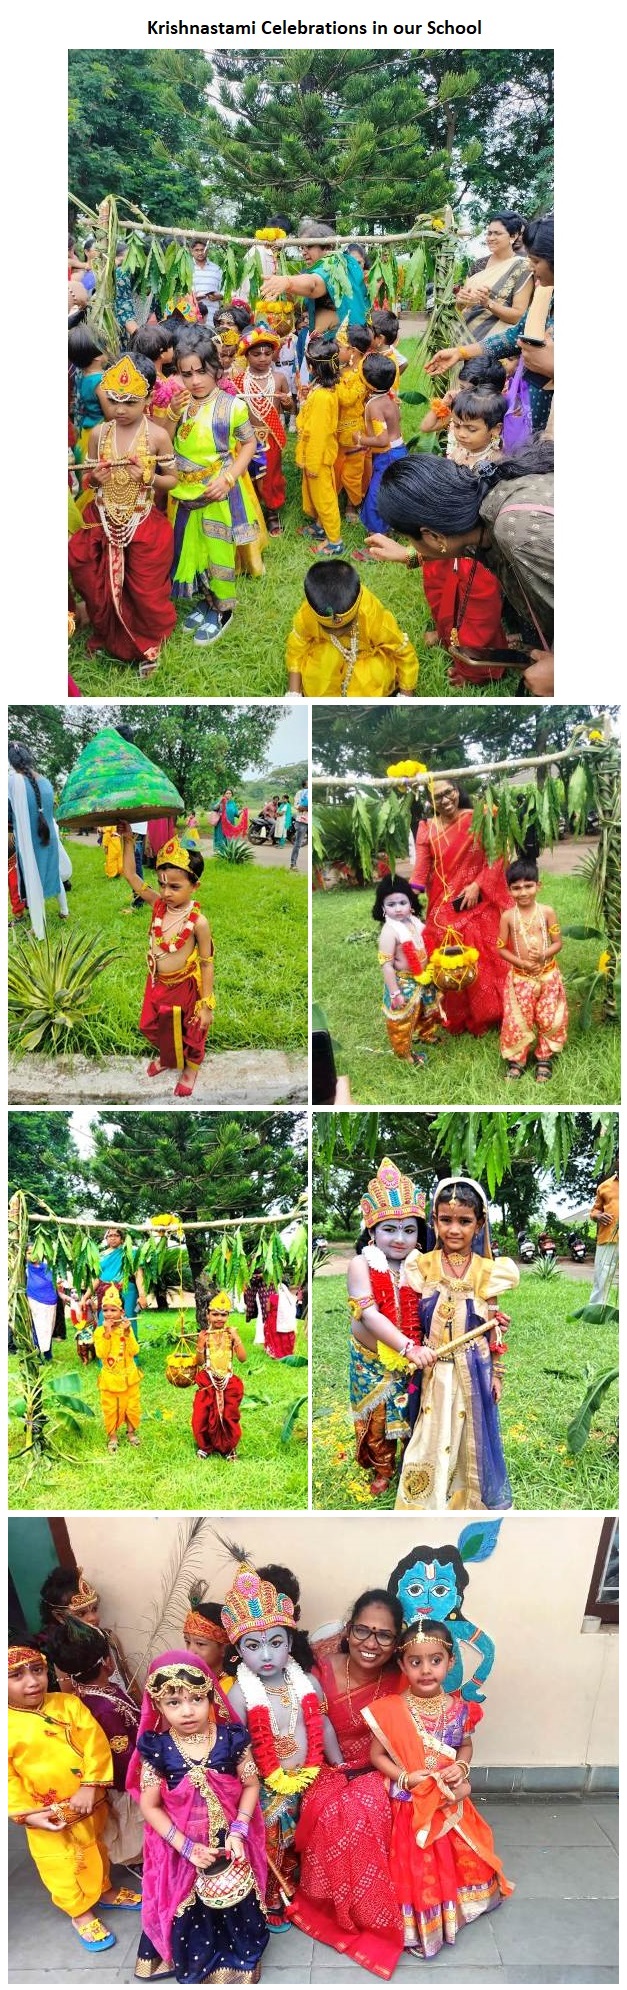 Krishnastami Celebrations